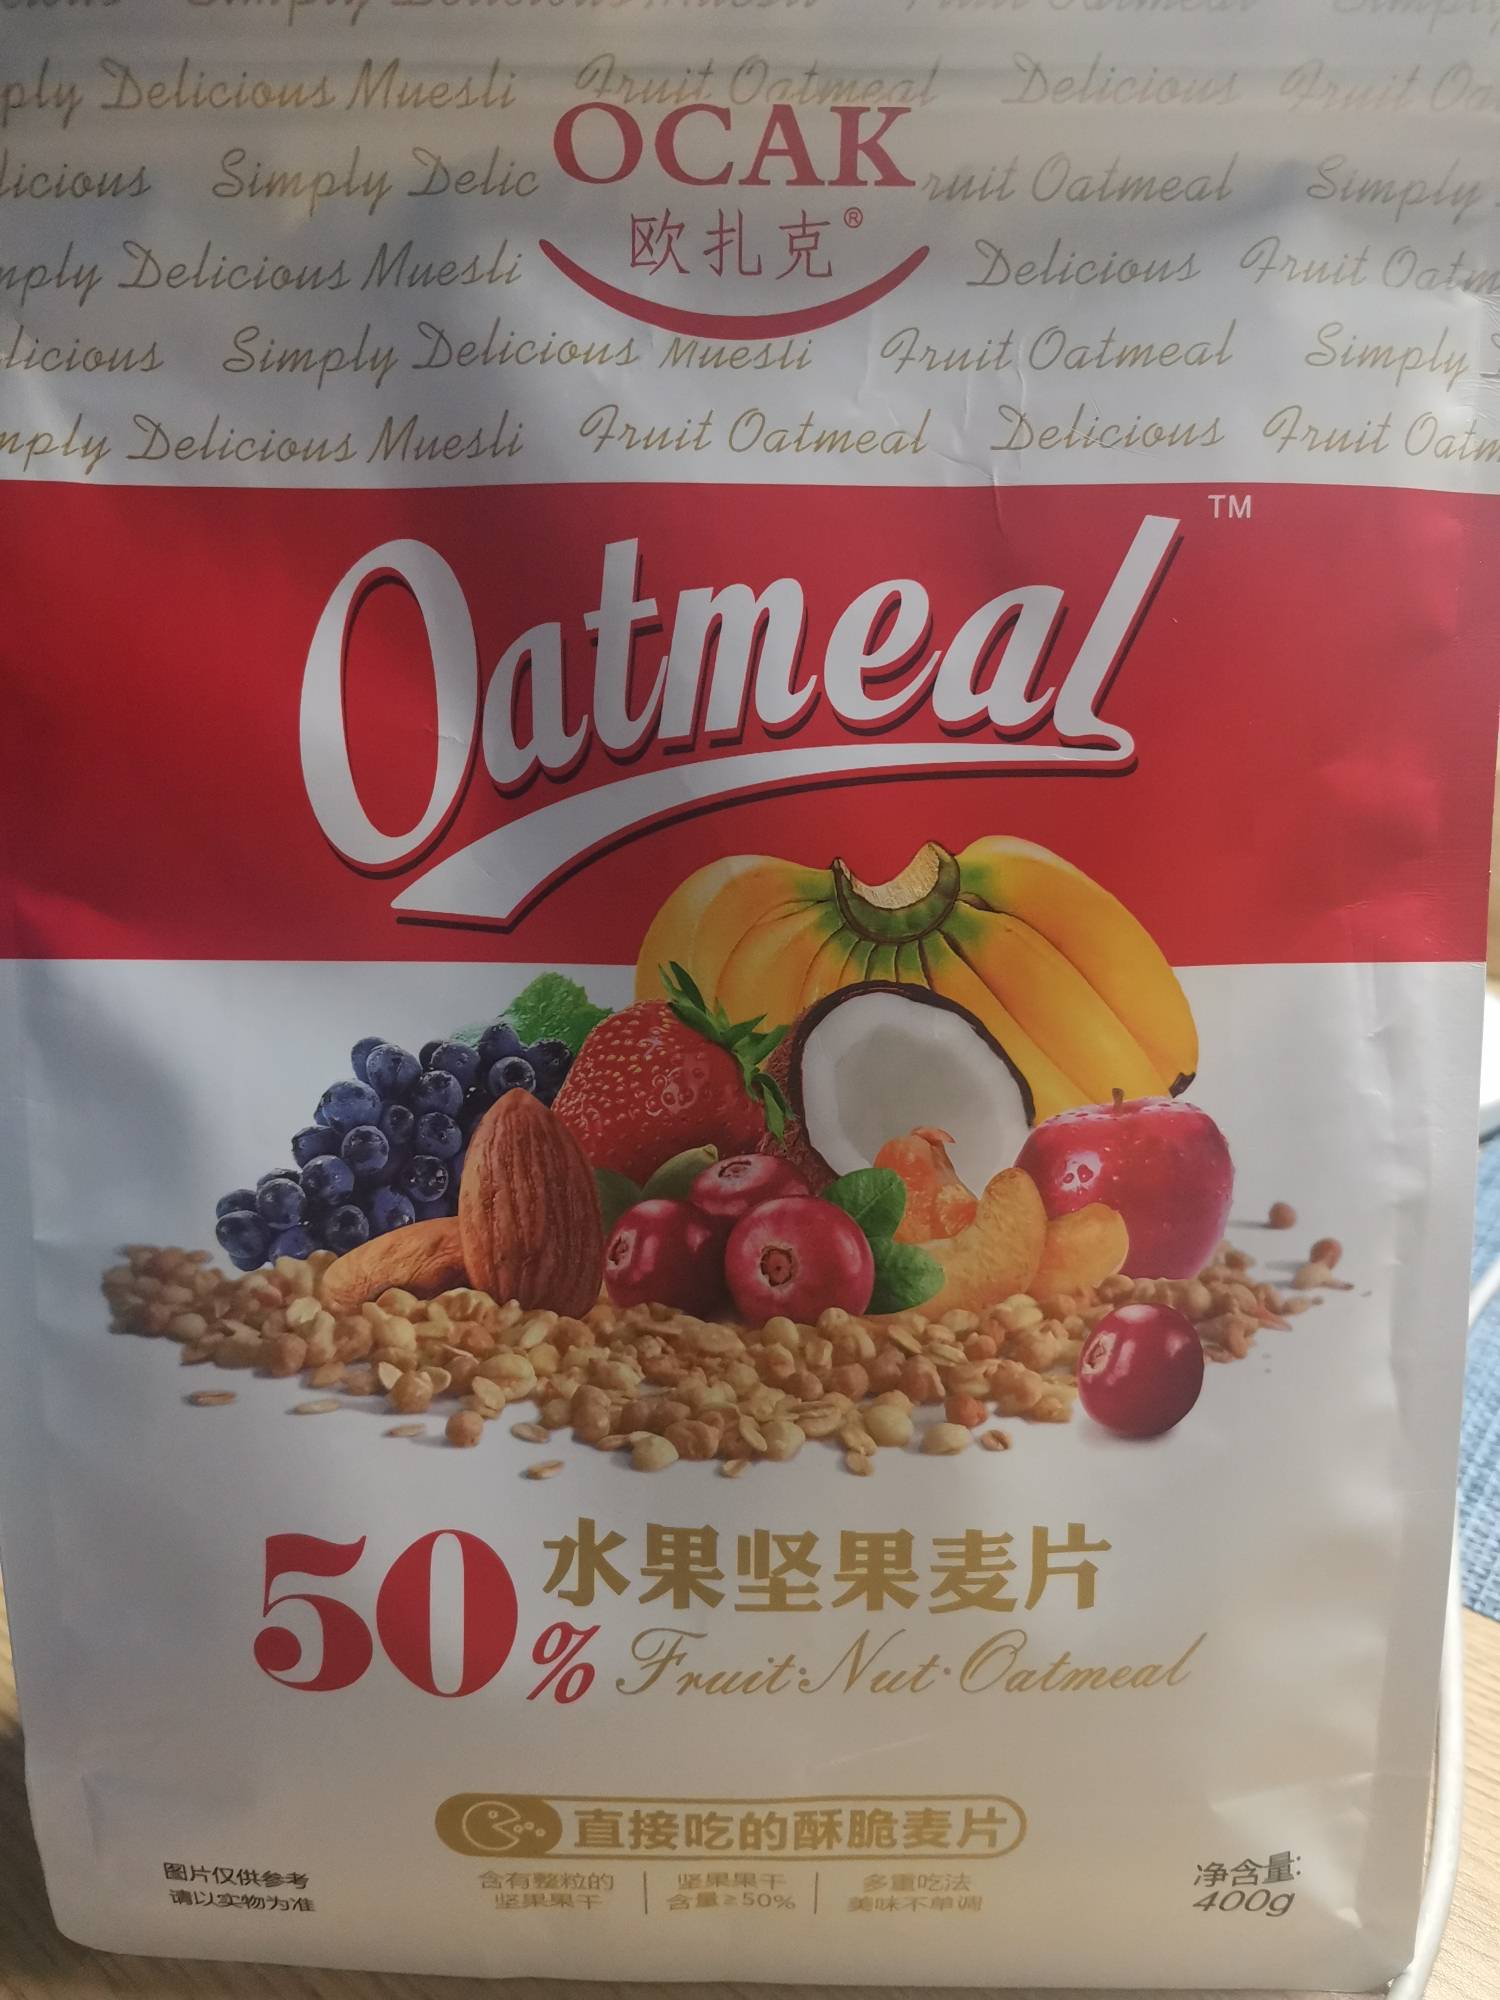 欧扎克50水果坚果麦片的热量和减肥功效